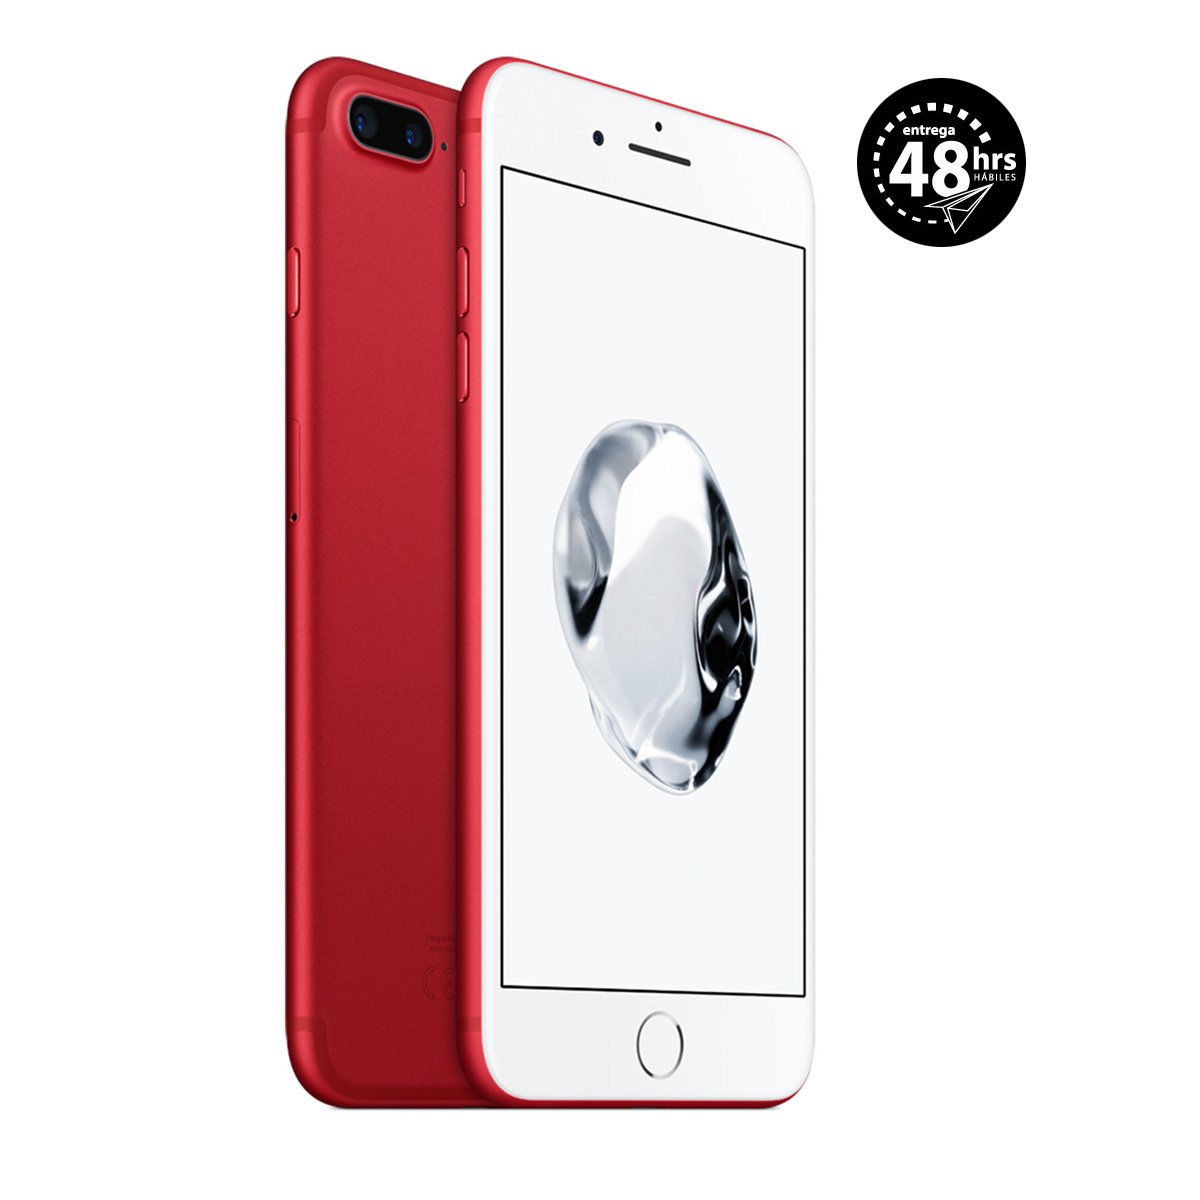 Celular Iphone 7 Plus  Color Rojo 128 Gb R9 (Telcel)